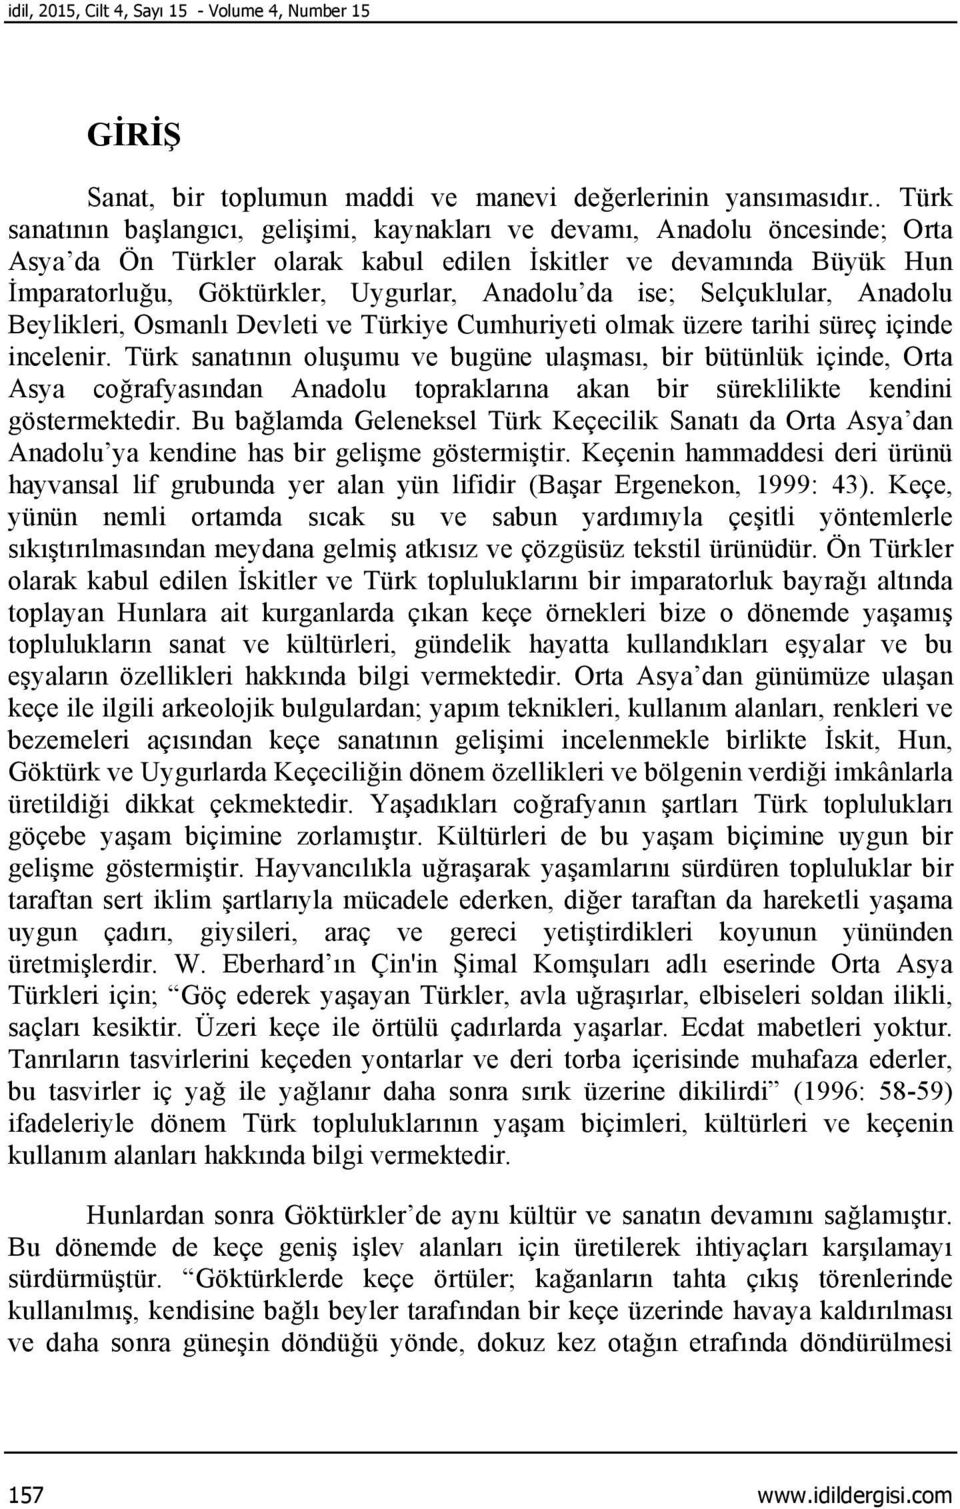 Anadolu da ise; Selçuklular, Anadolu Beylikleri, Osmanlı Devleti ve Türkiye Cumhuriyeti olmak üzere tarihi süreç içinde incelenir.